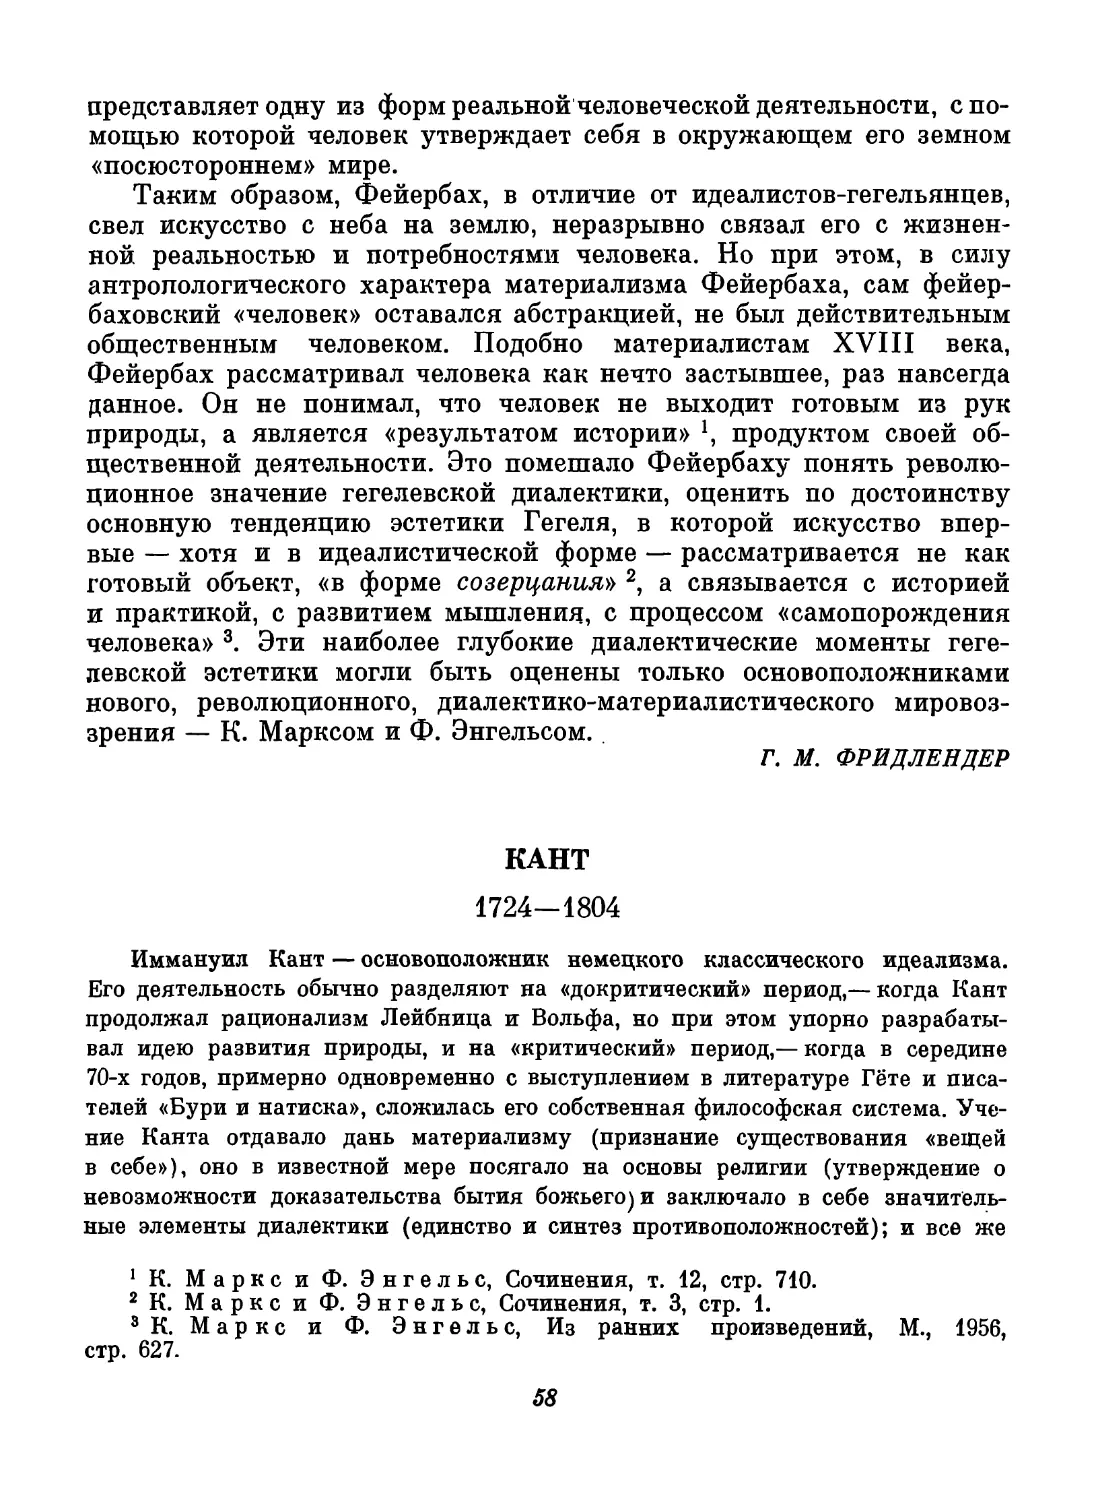 Кант. Составление, вступительный текст и перевод Н. И. Балашова